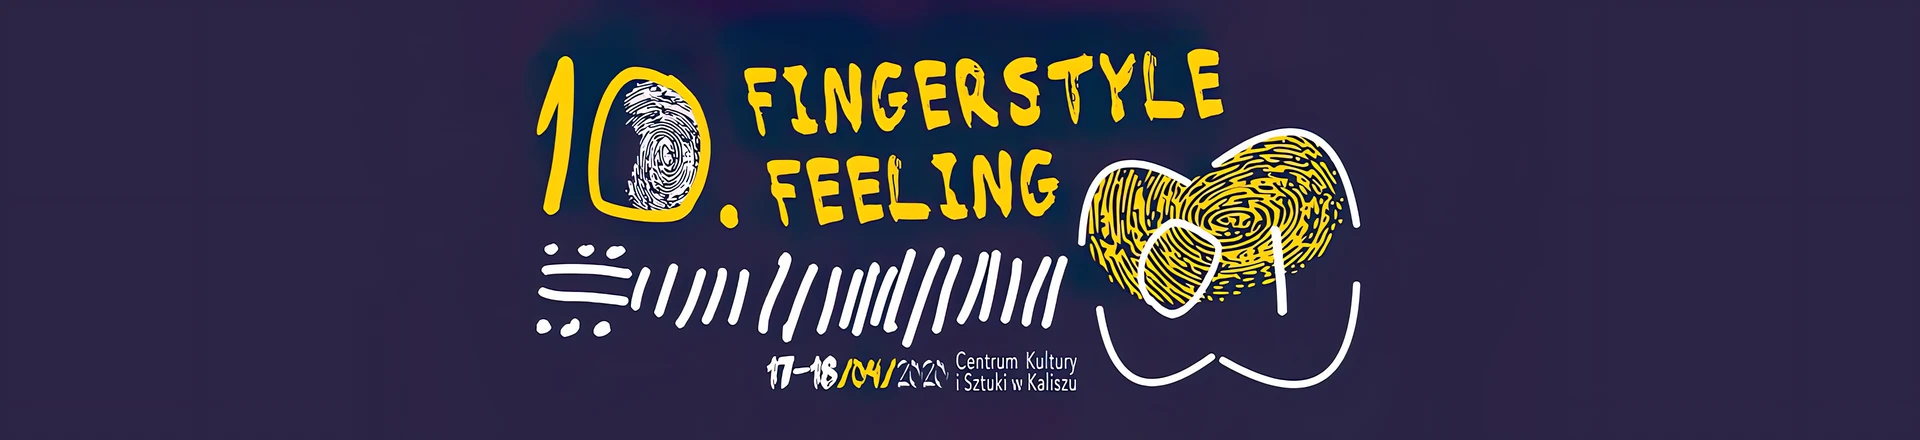 10. edycja Fingerstyle Feeling Festival już w kwietniu